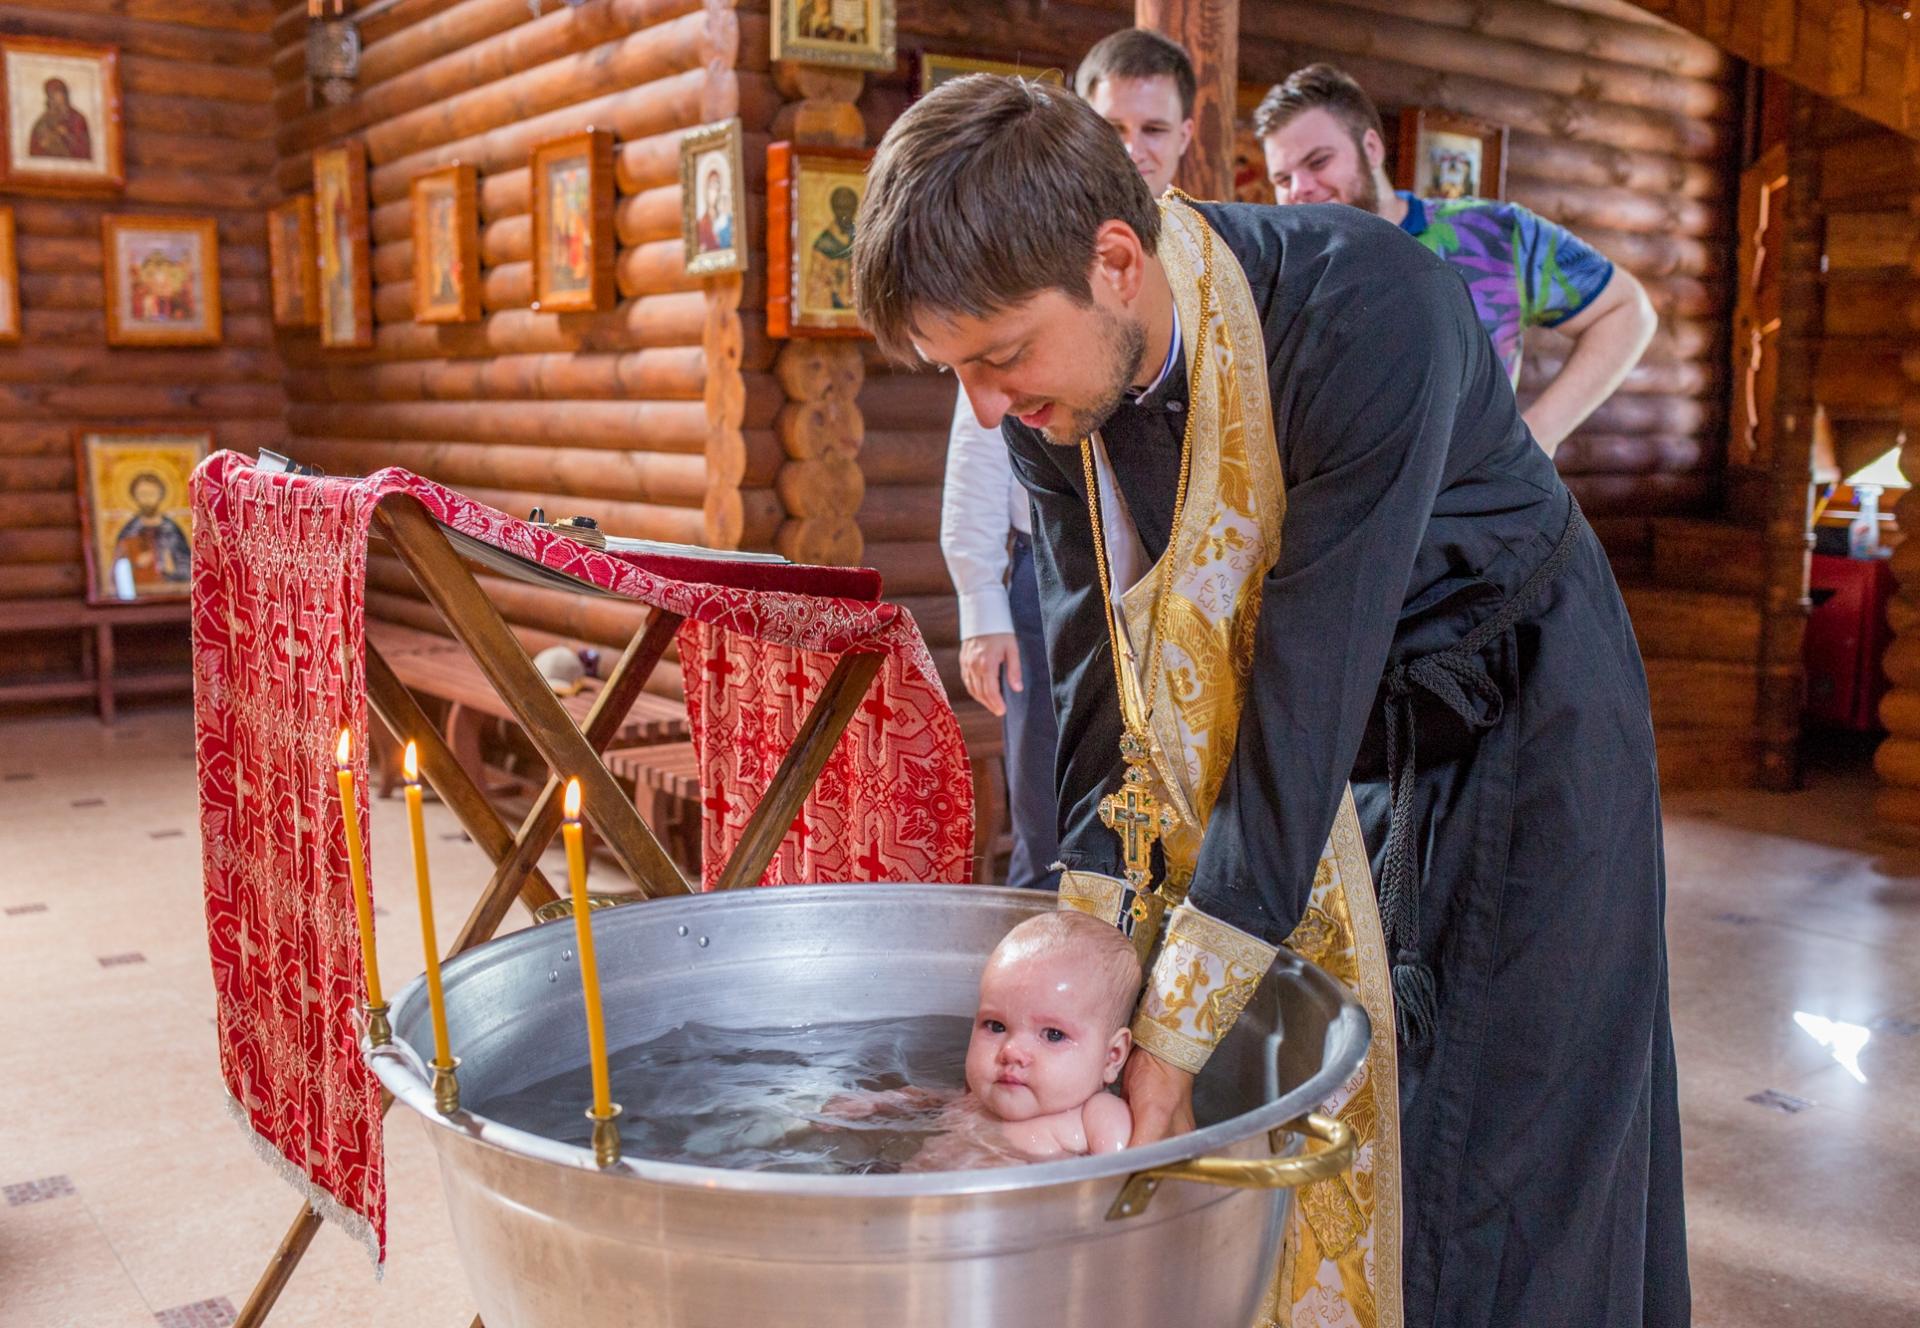 Что делает крестная во время крещения. Таинство крещения в православной церкви. Крестины в церкви. Обряд крещения в храме младенца. Крещение младенца в храме.